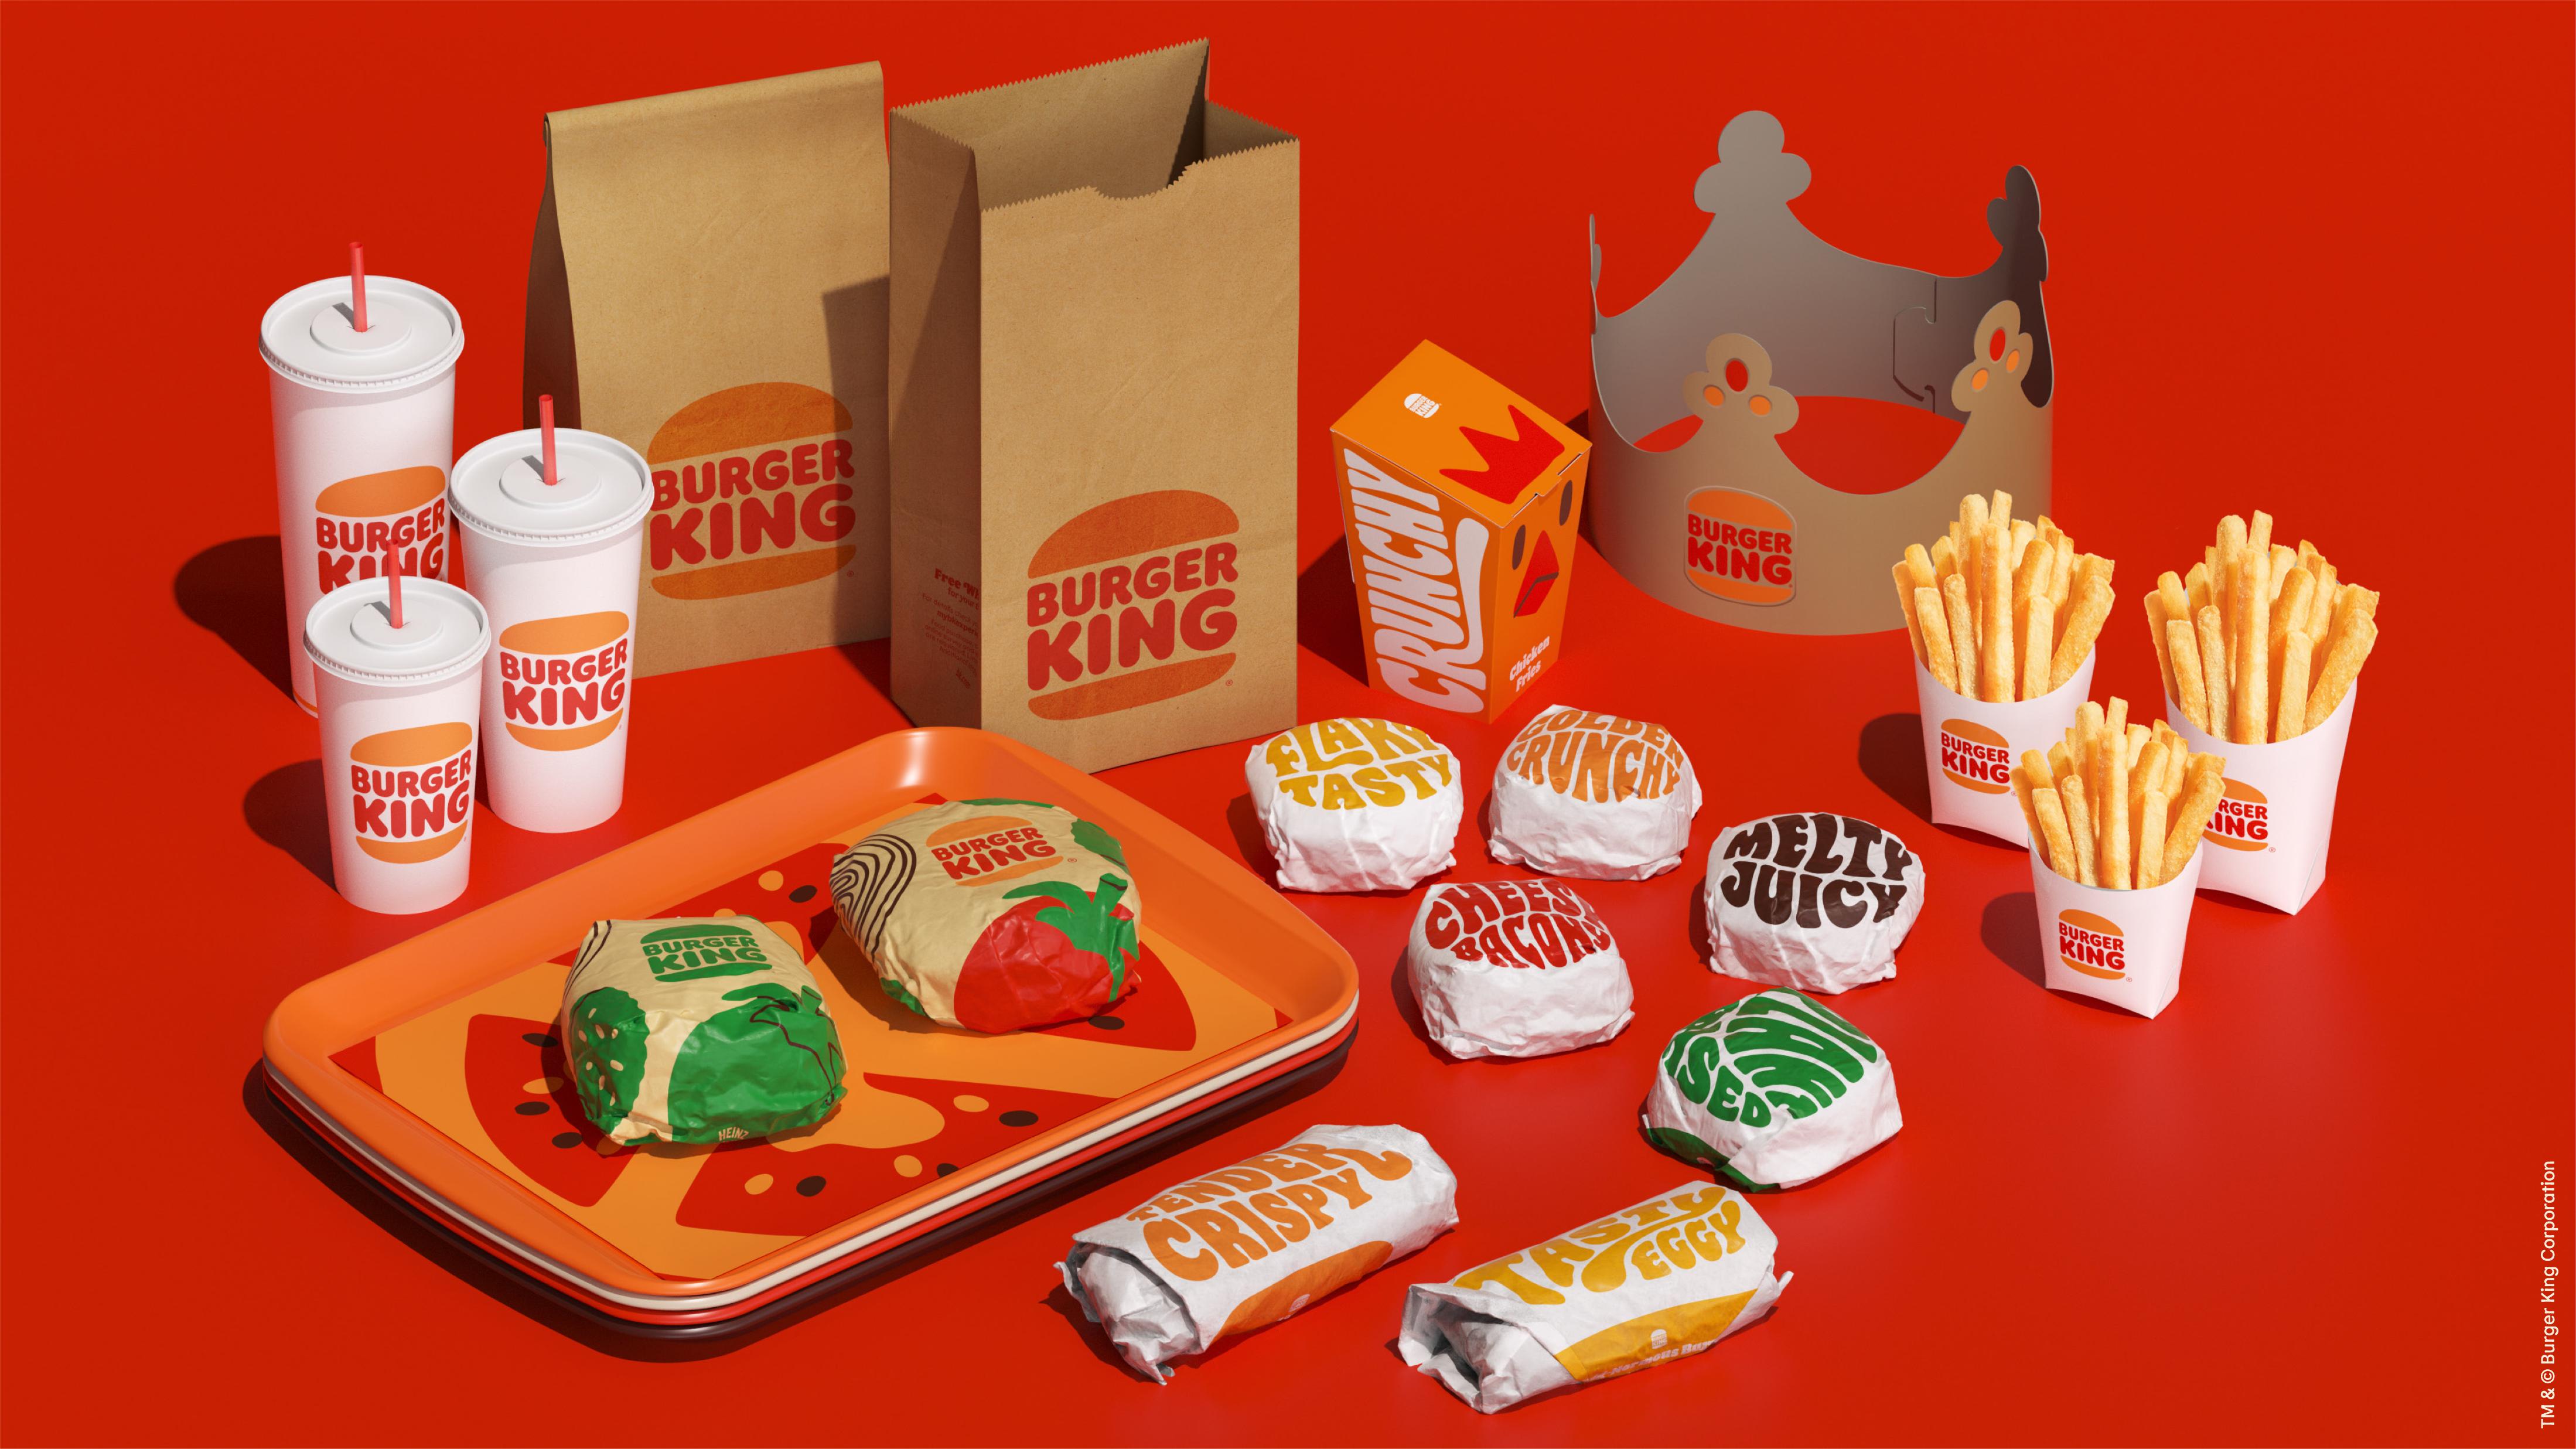 Online Burger King Online Orders, Save 58 jlcatj.gob.mx